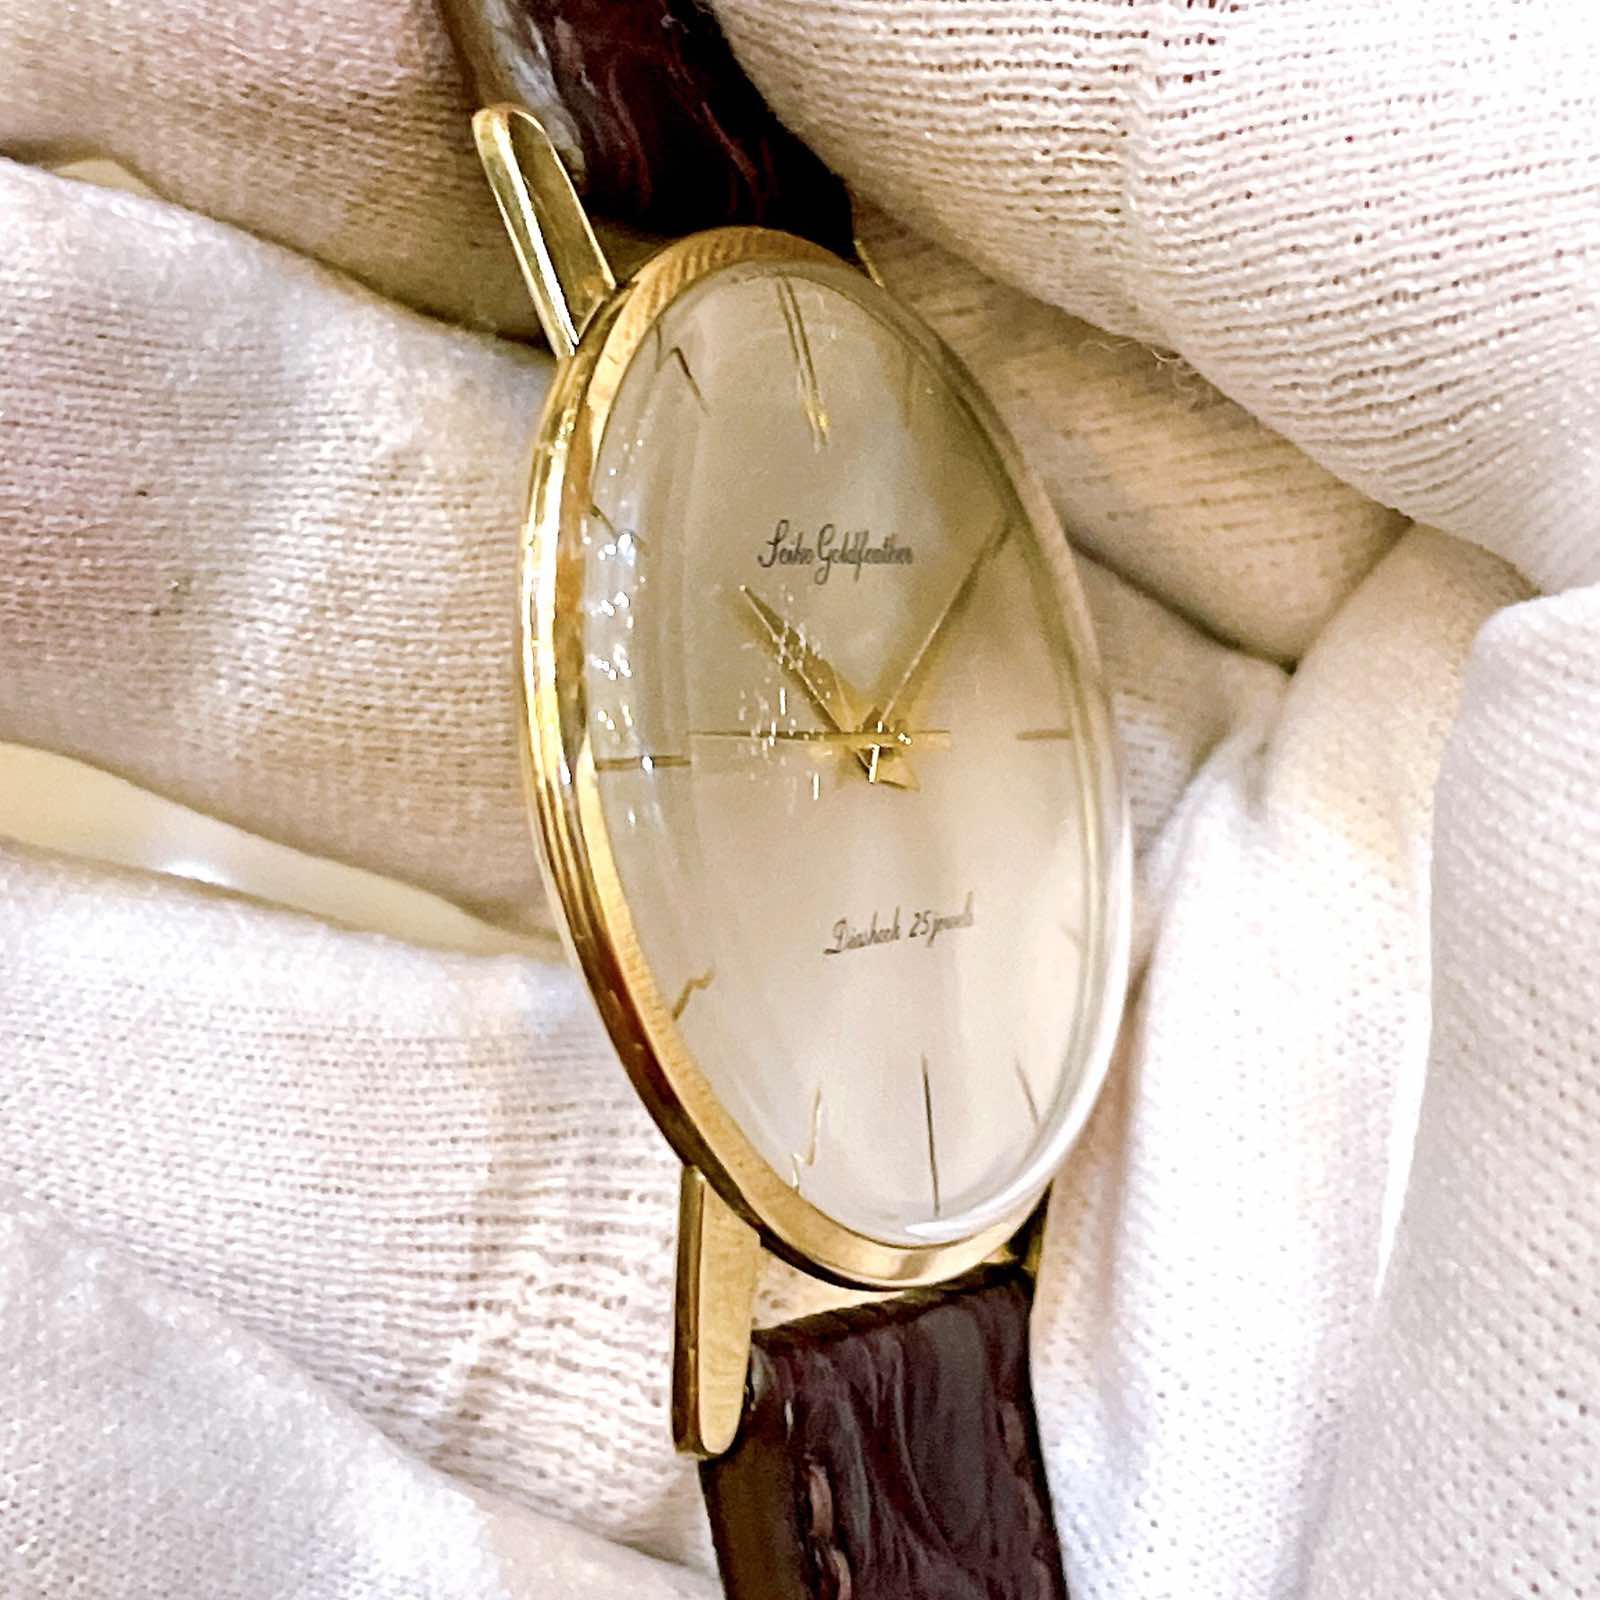 Đồng hồ cổ Seiko Gold Feather bọc vàng 14k goldfilled lên dây chính hãng nhật bản